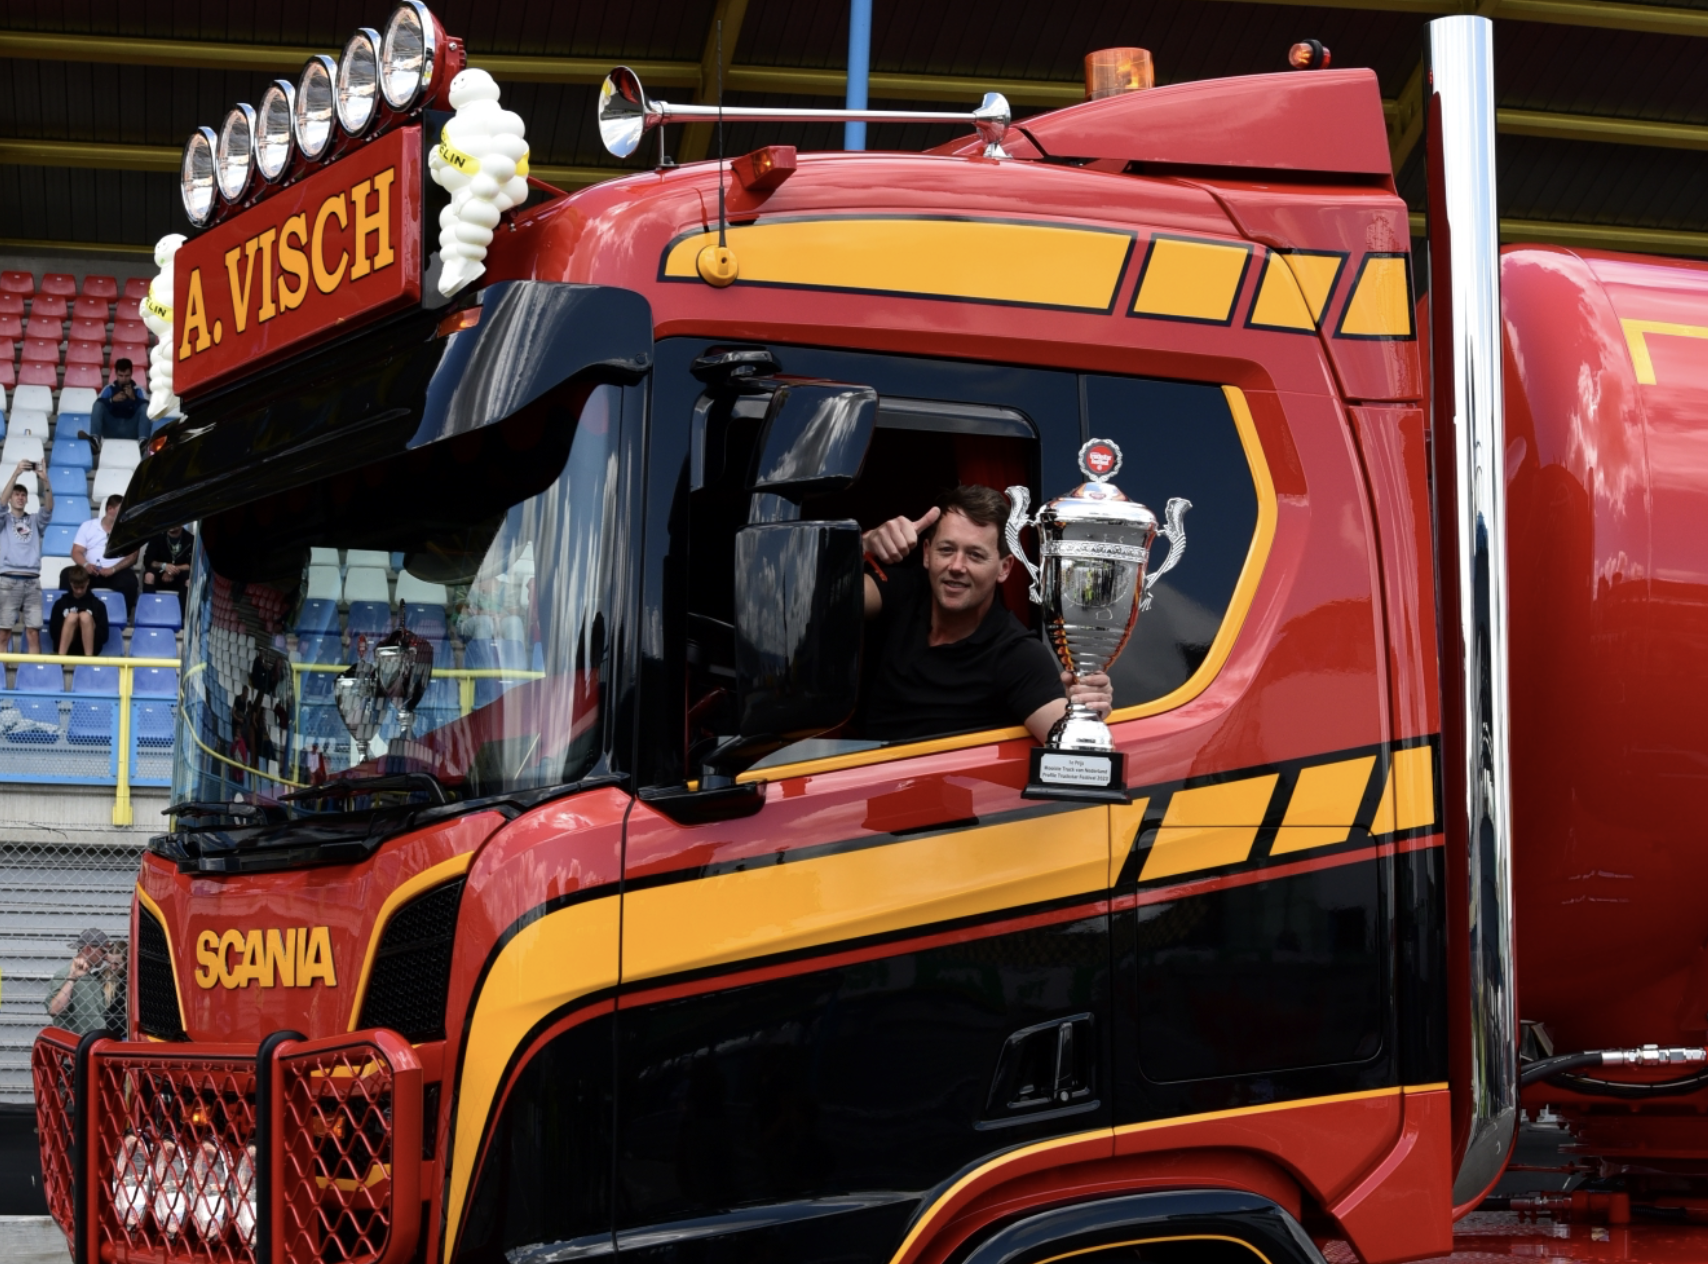 En de winnaar van de Mooiste Truck van Nederland is ...